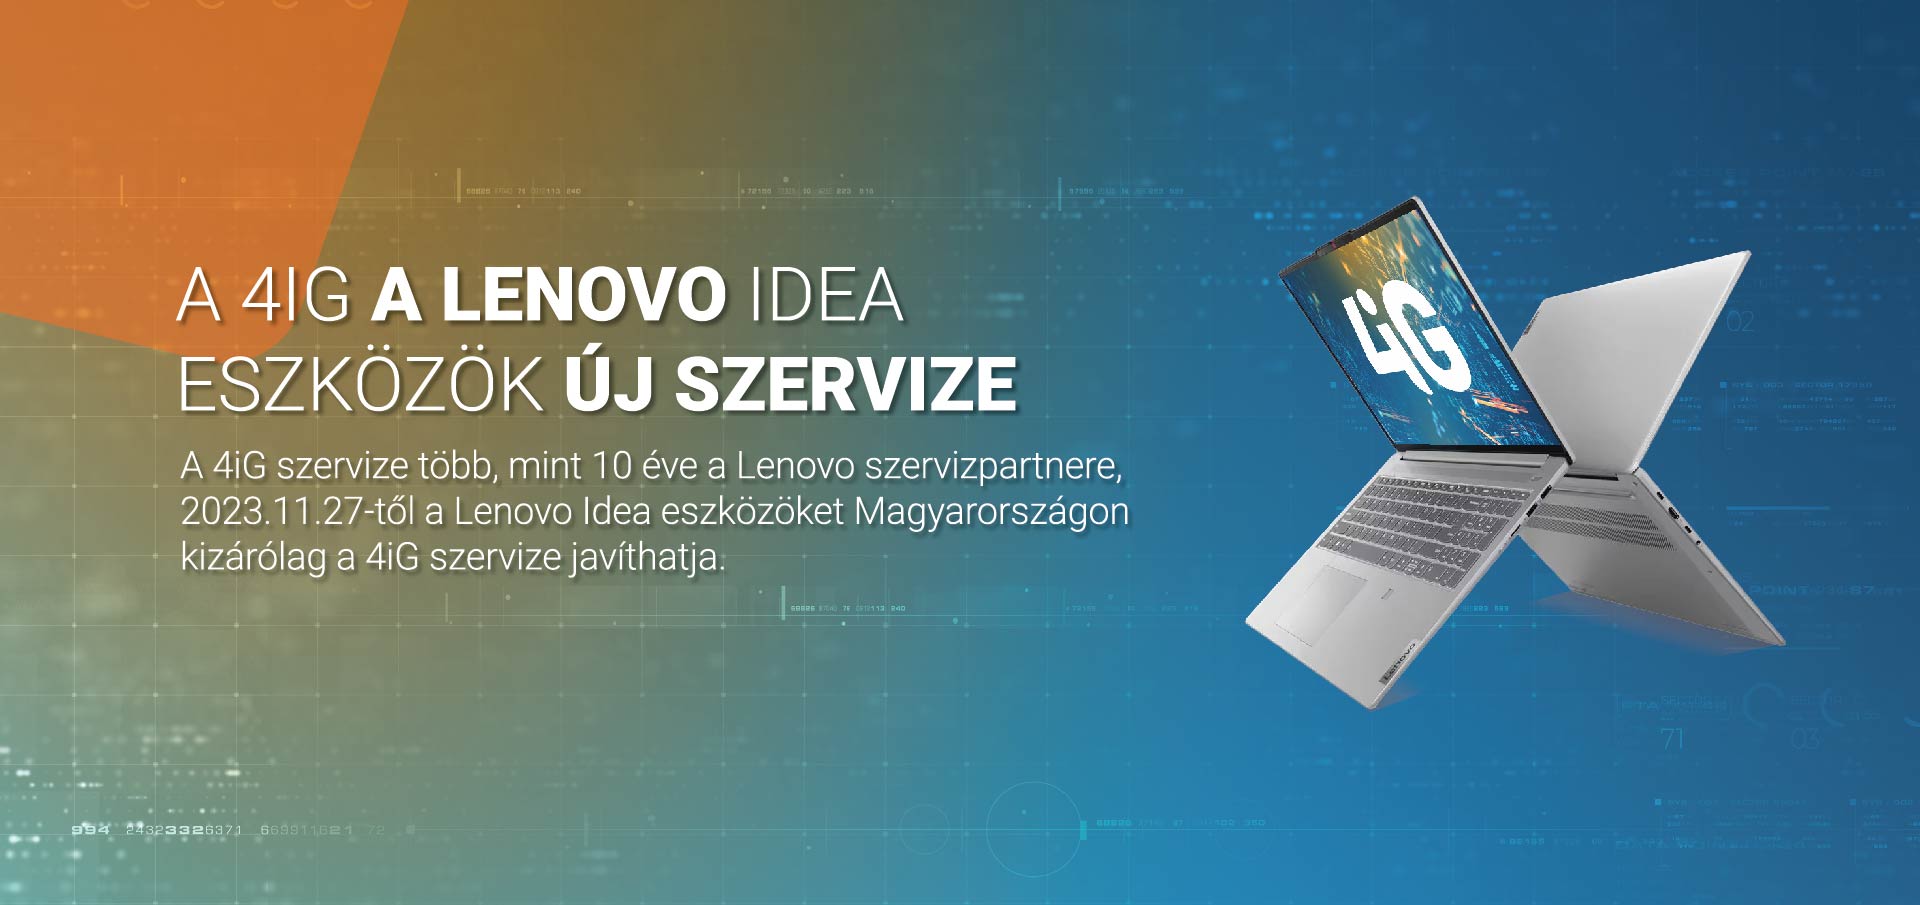 A 4iG a Lenovo Idea eszközök új szervize